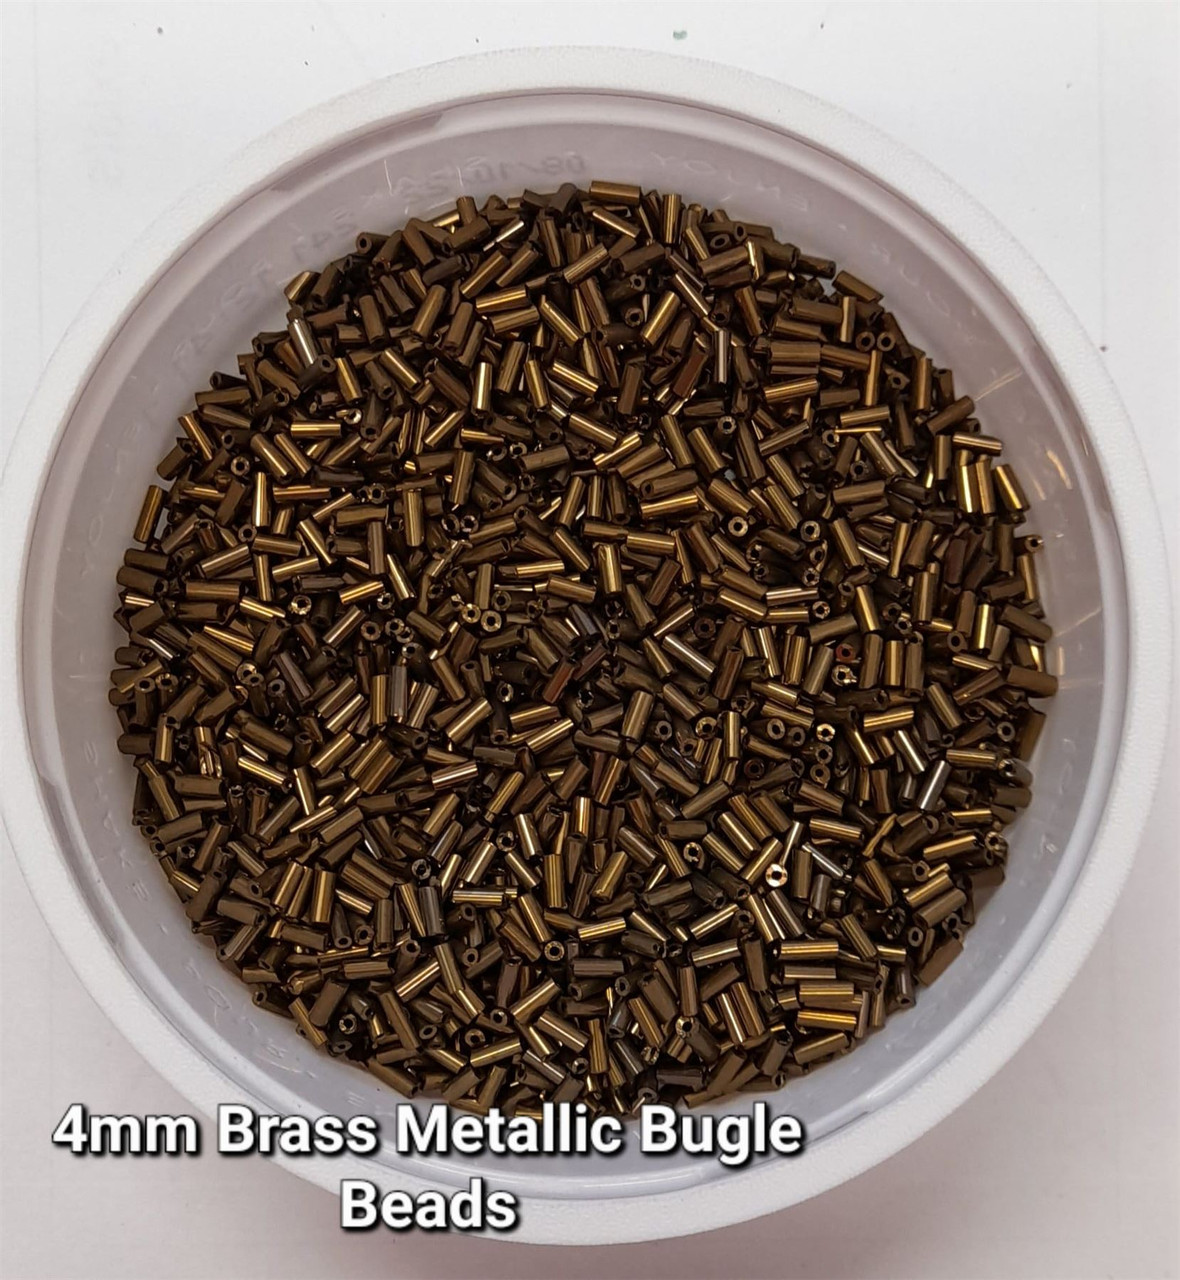 50g glass bugle beads - Brass Metallic - approx 4mm